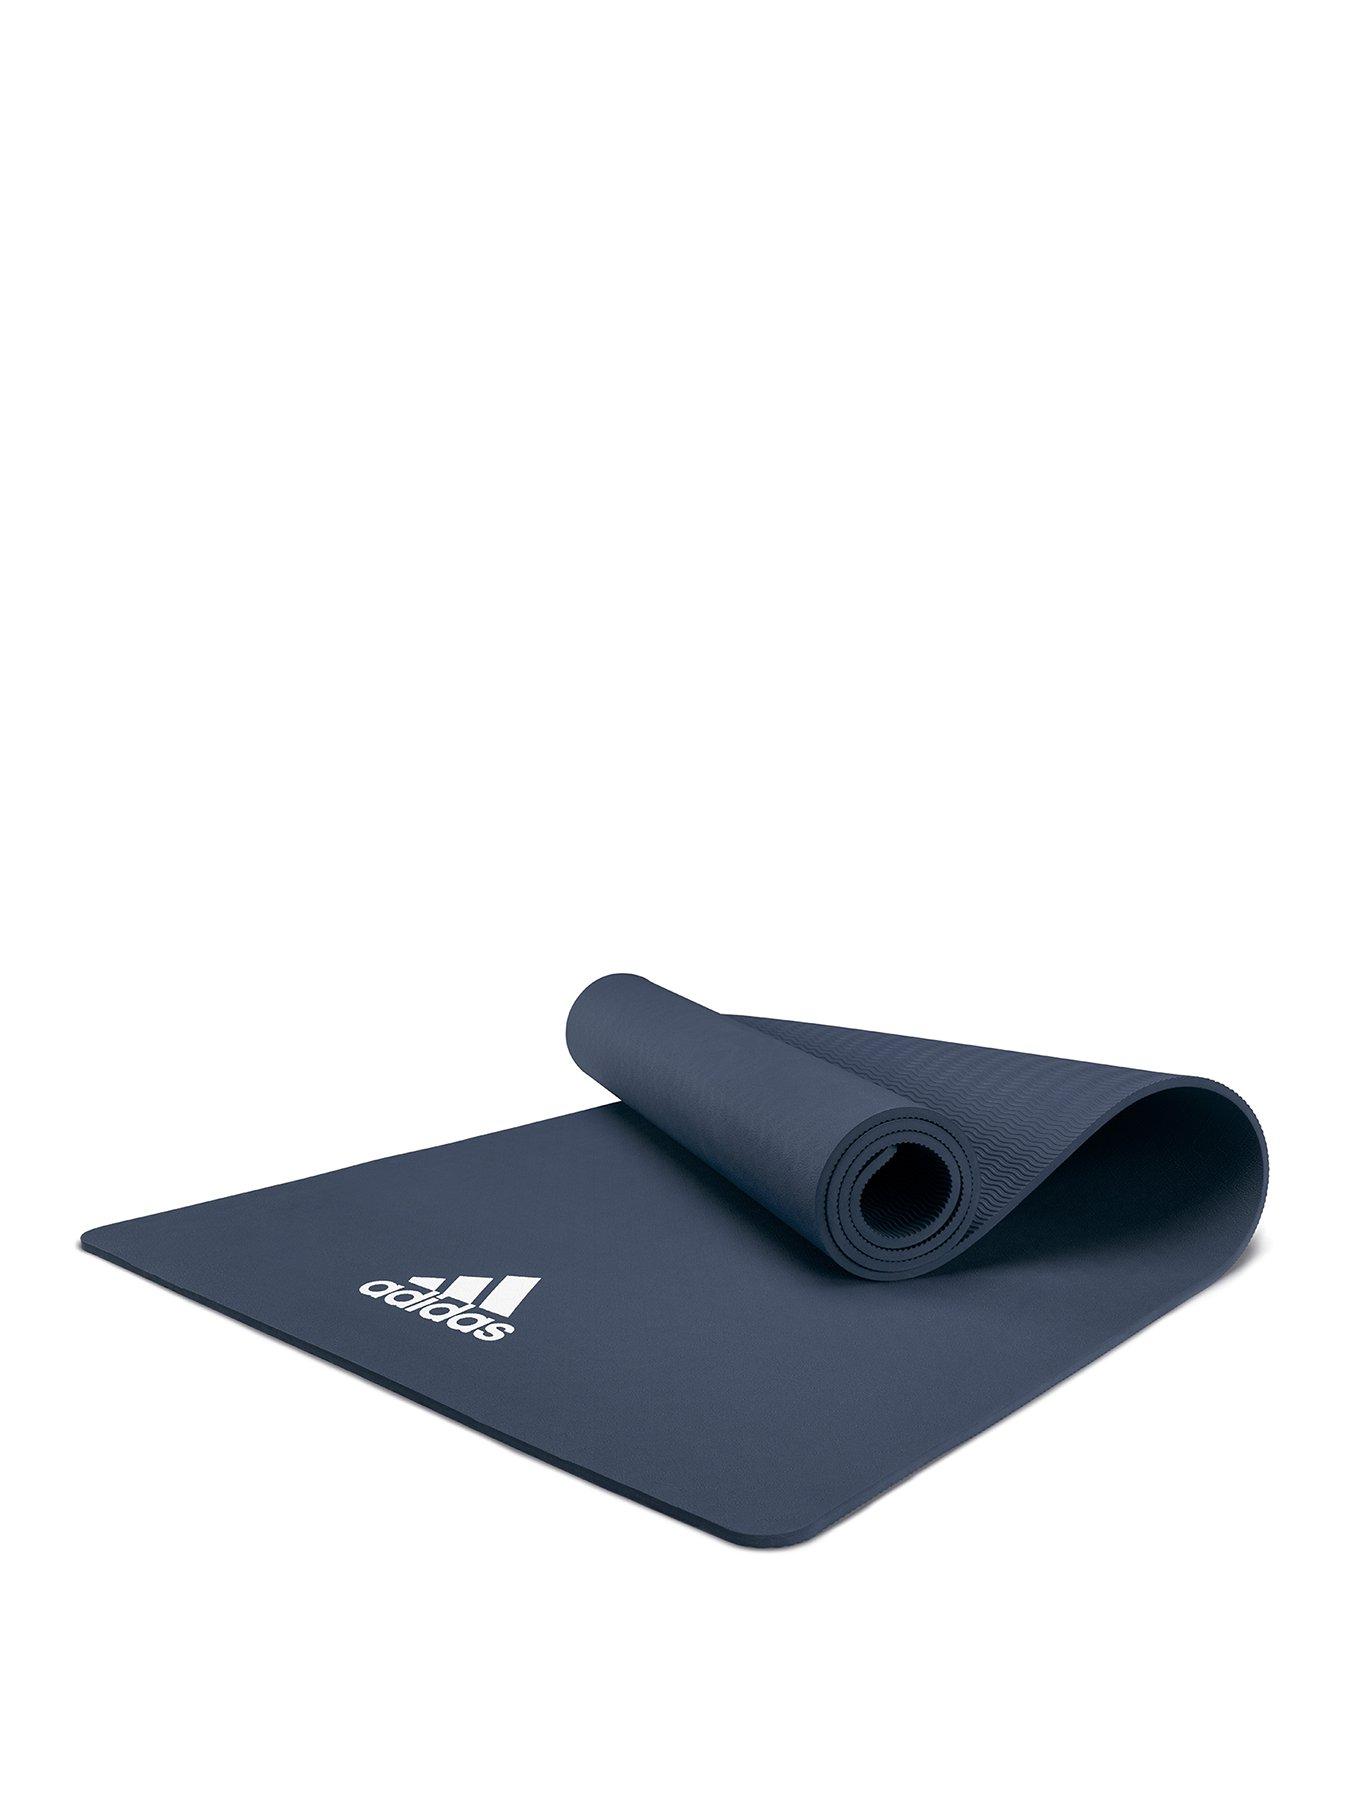 adidas exercise mat